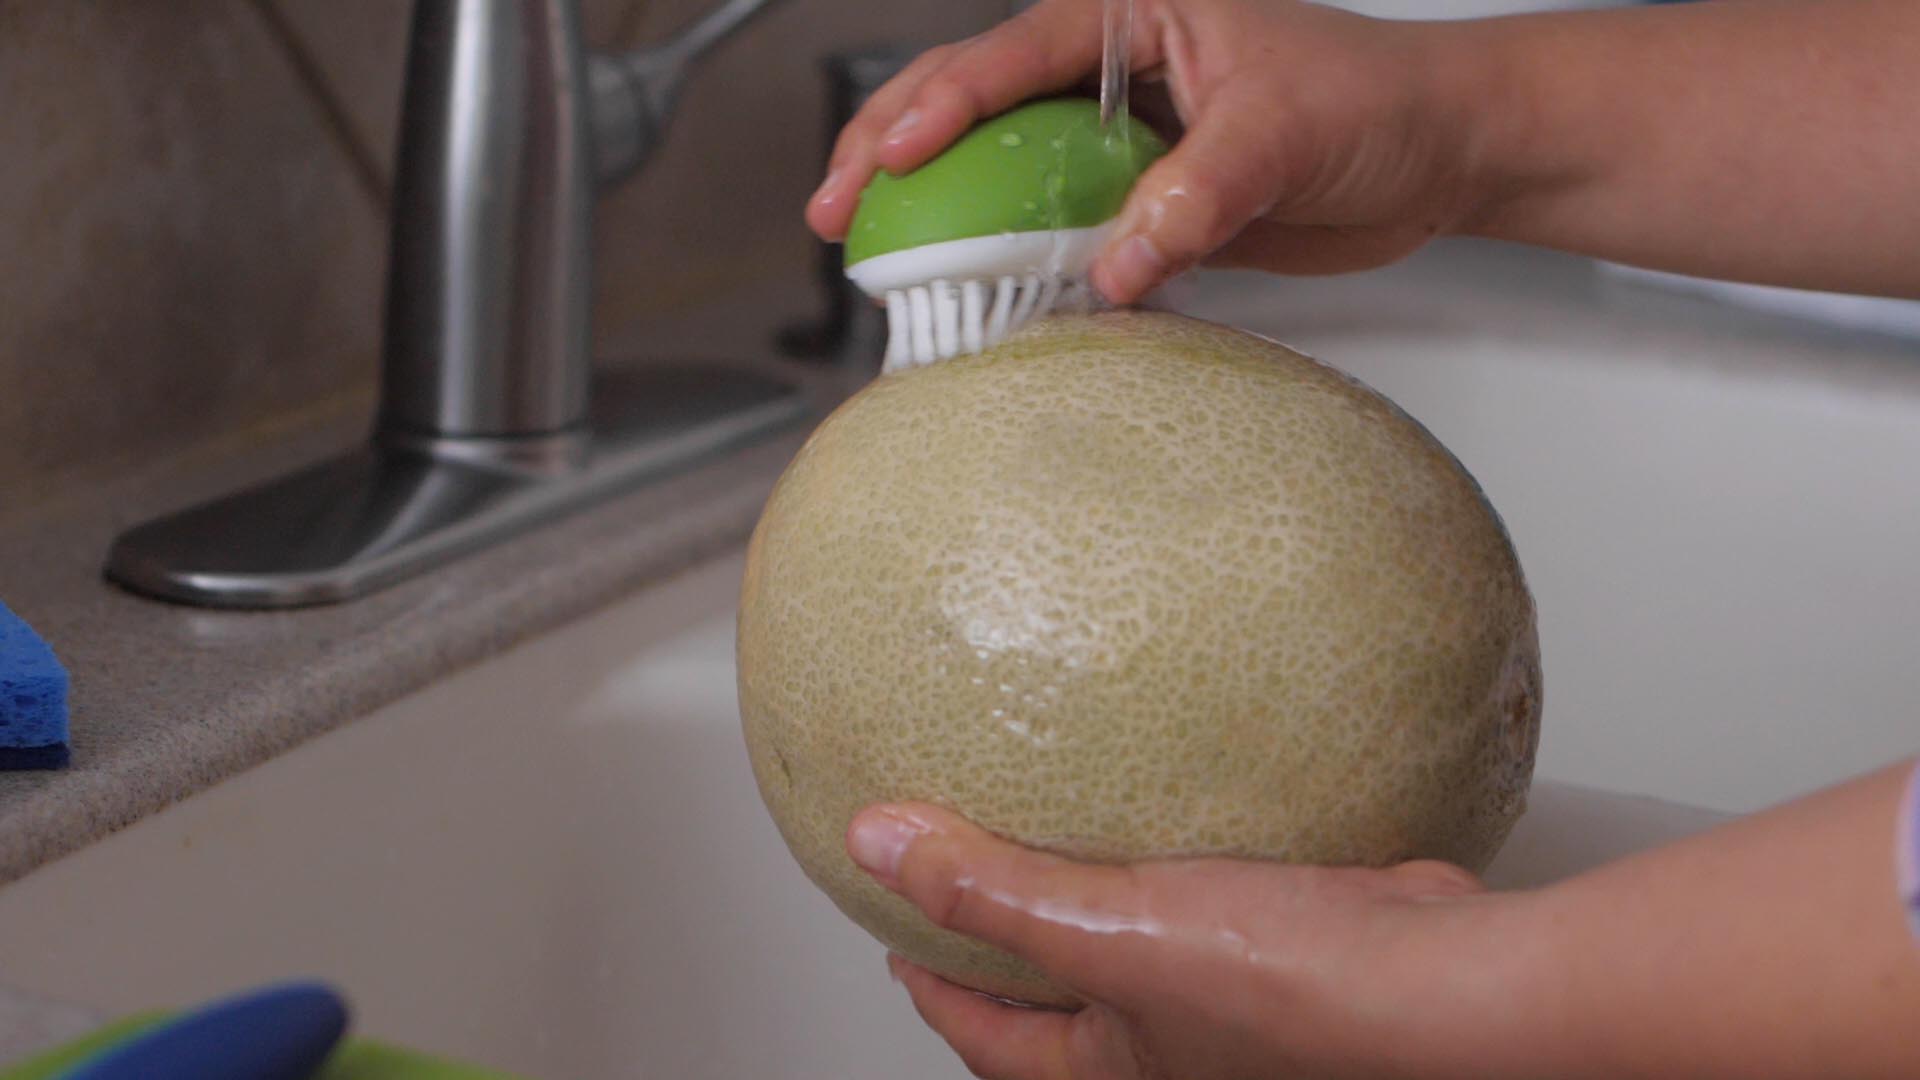 Image of washing melon